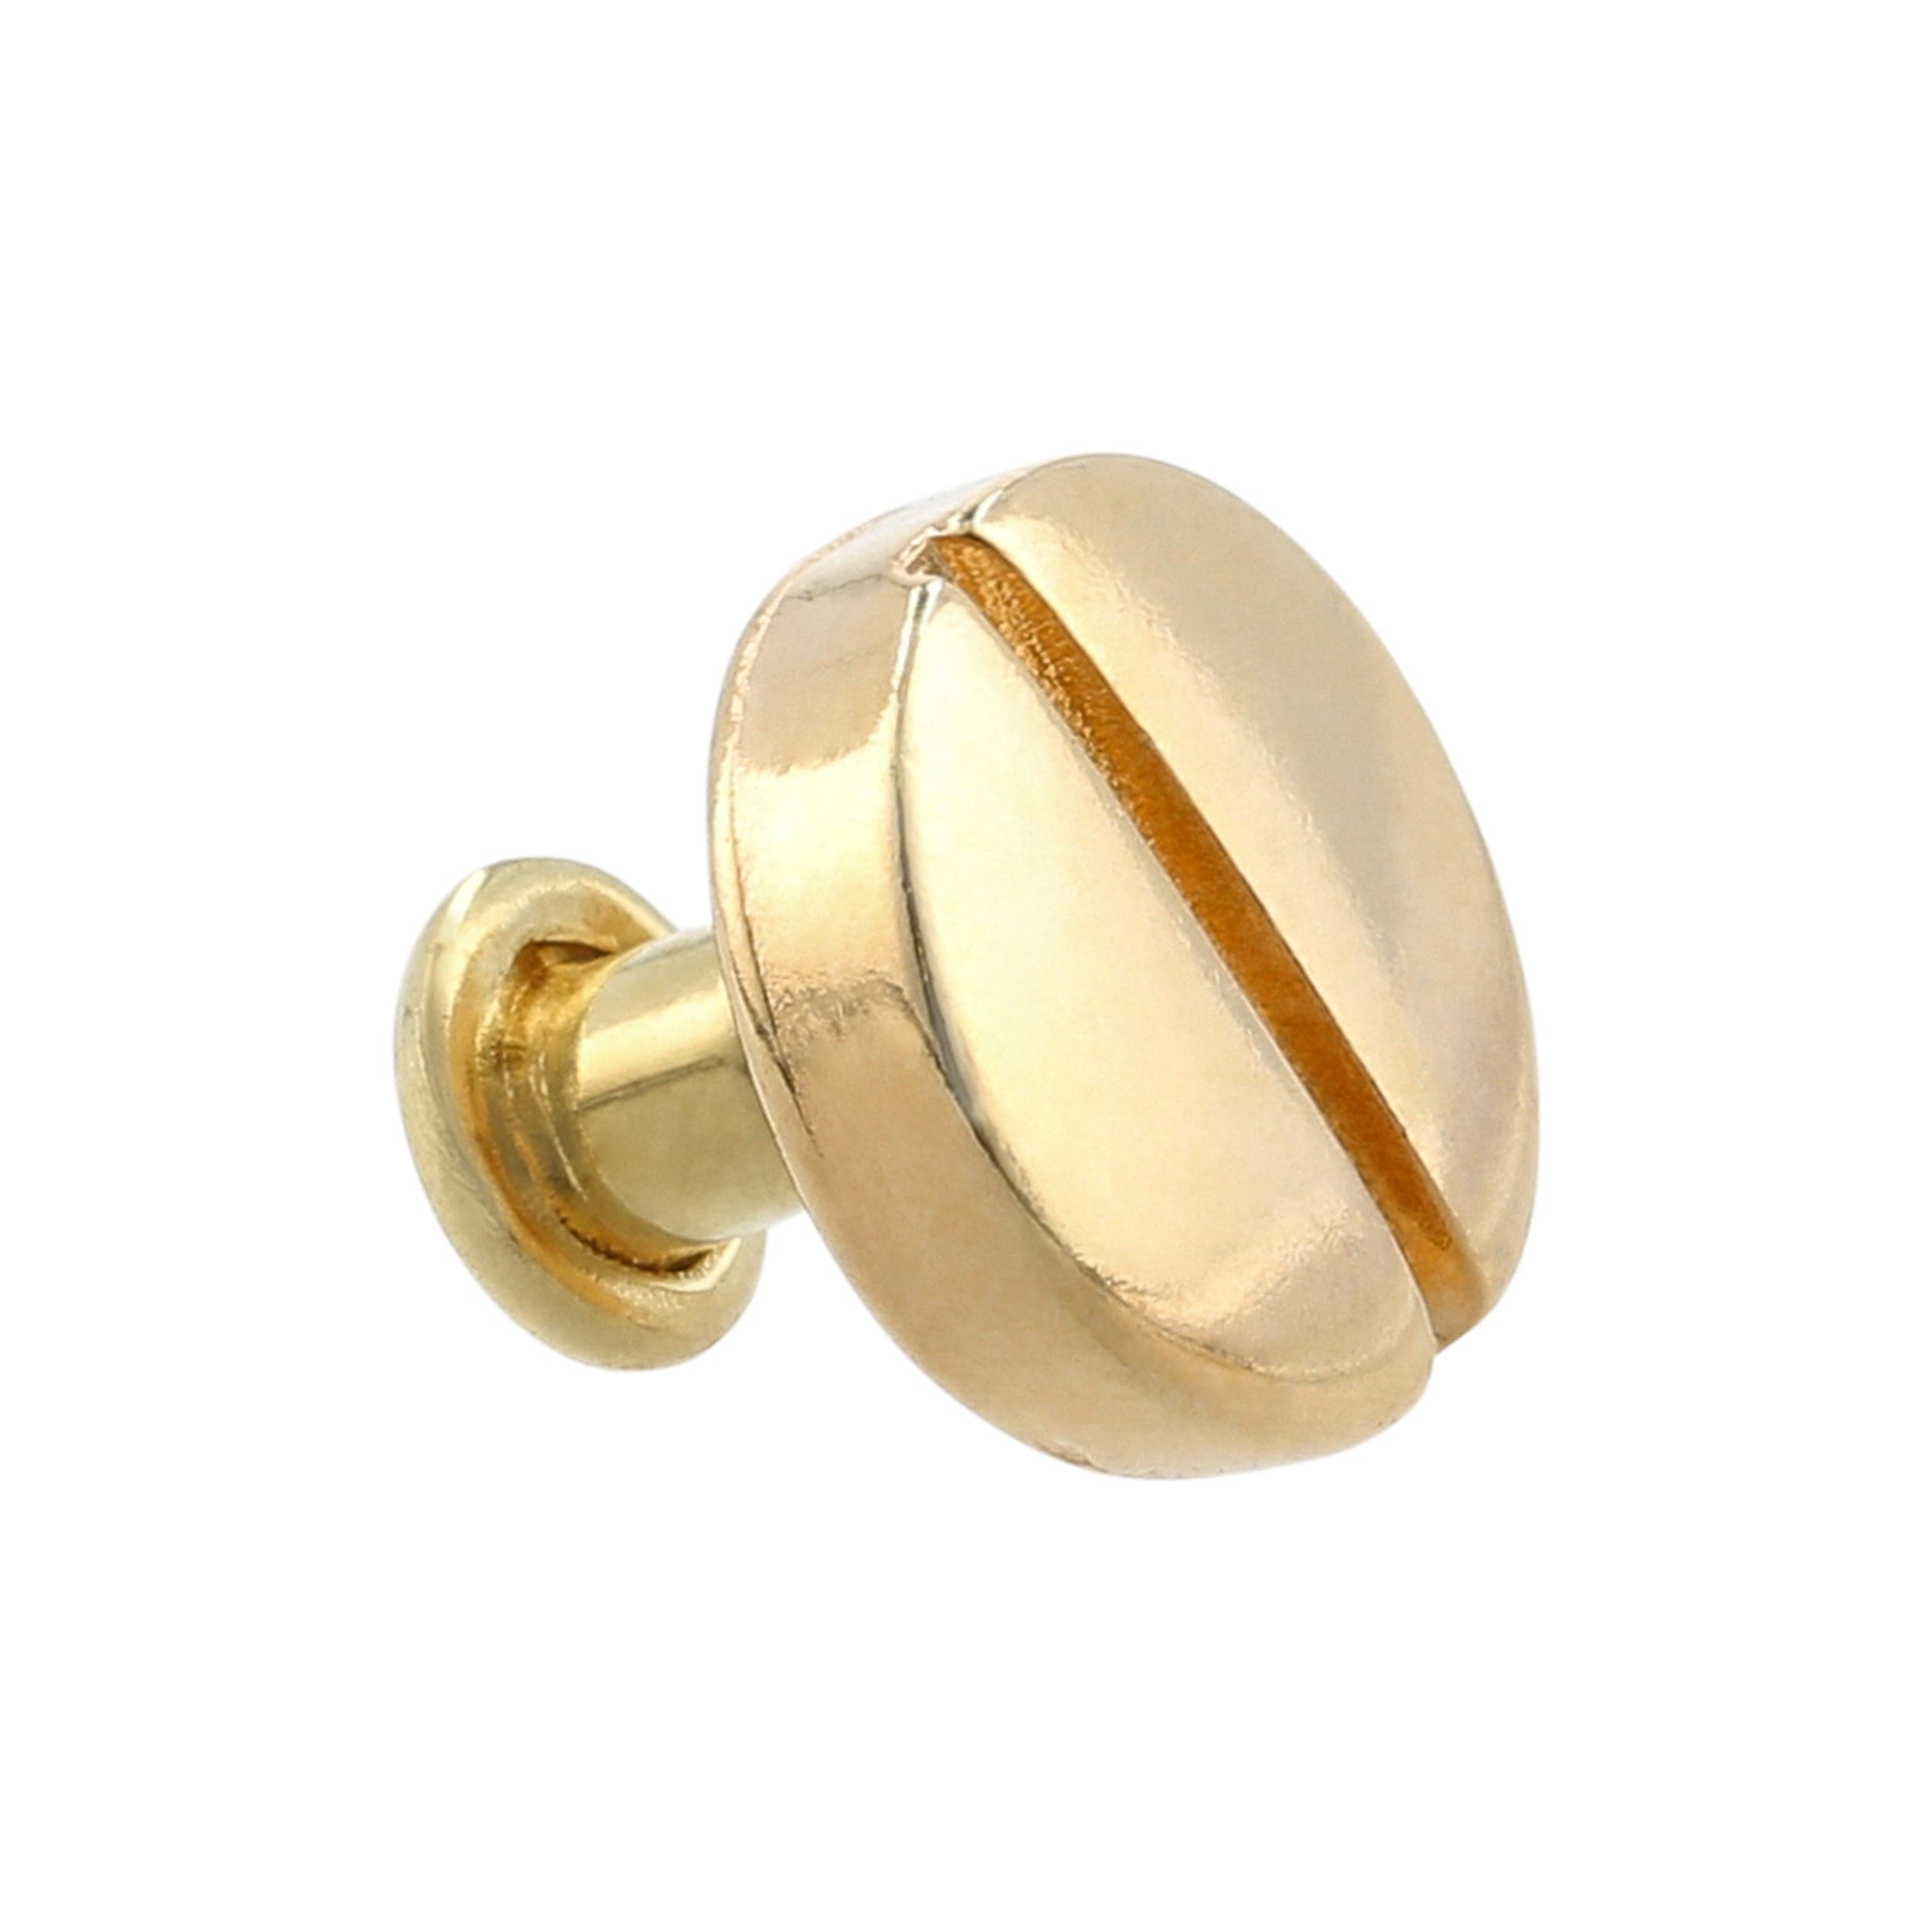 Designer Gold Rivet Stud Earrings